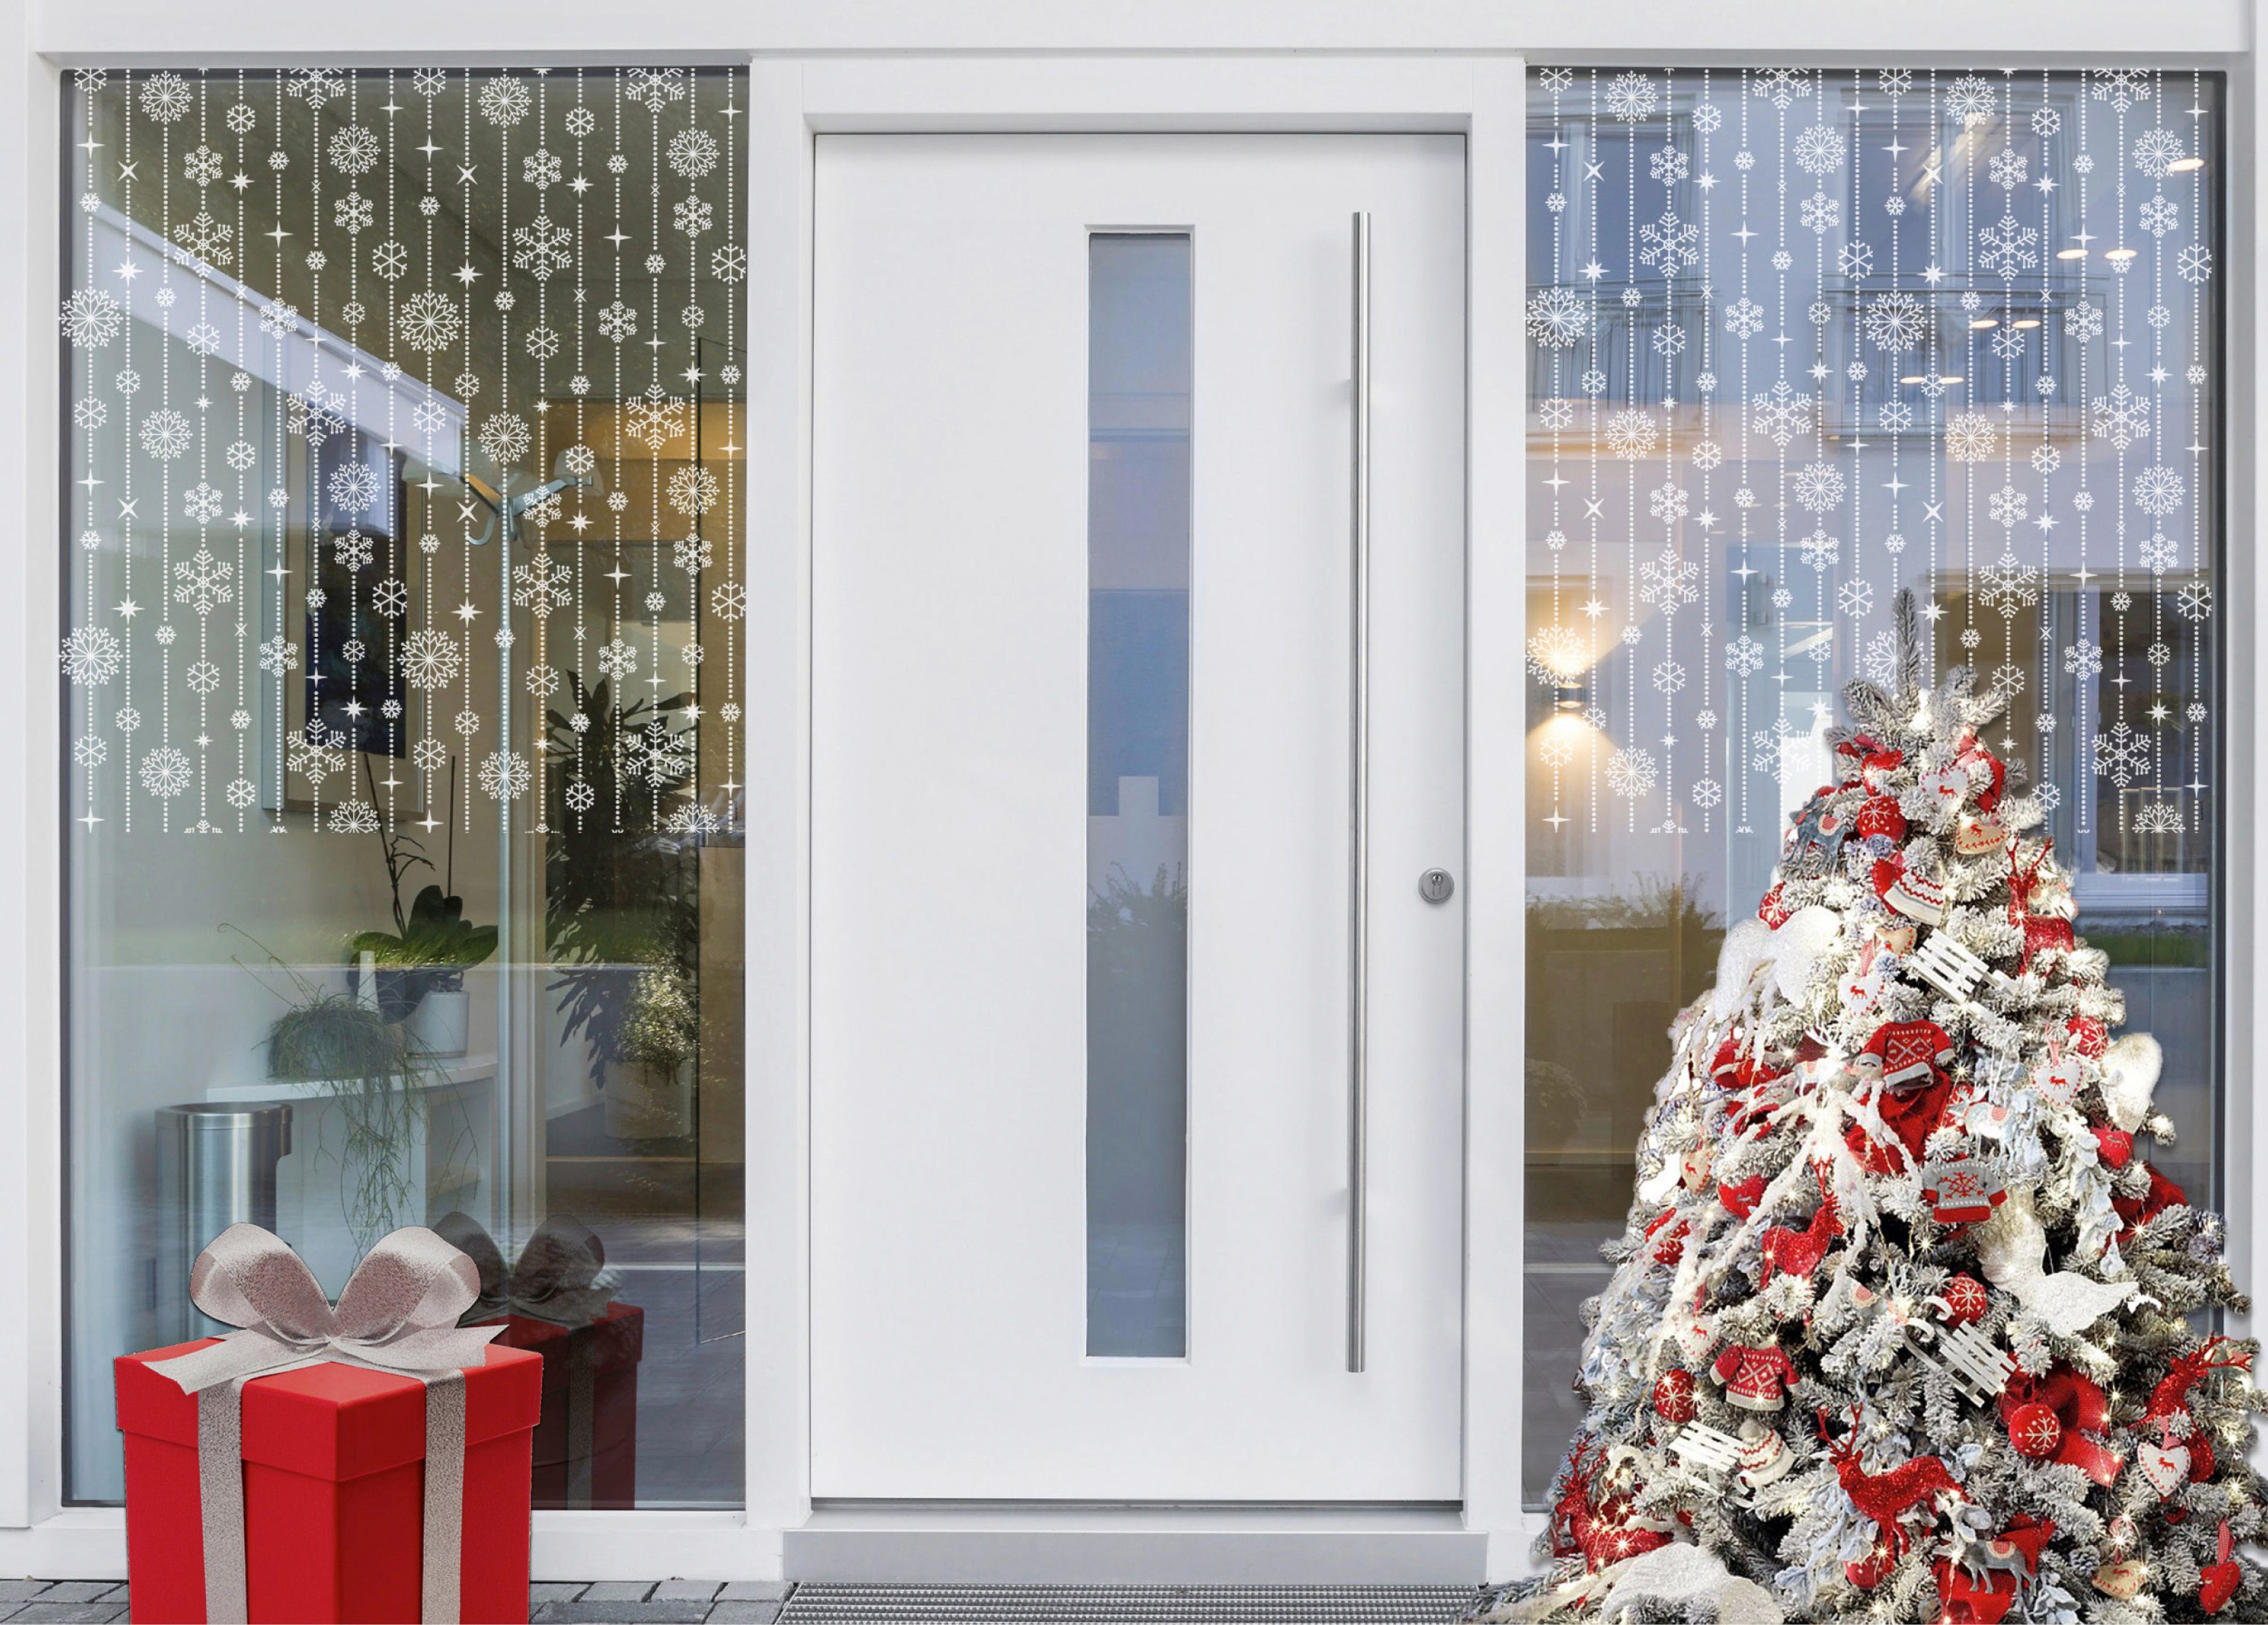 Fensterfolie Look Schneeflocken white, MySpotti, x cm, haftend 100 halbtransparent, 60 statisch glatt